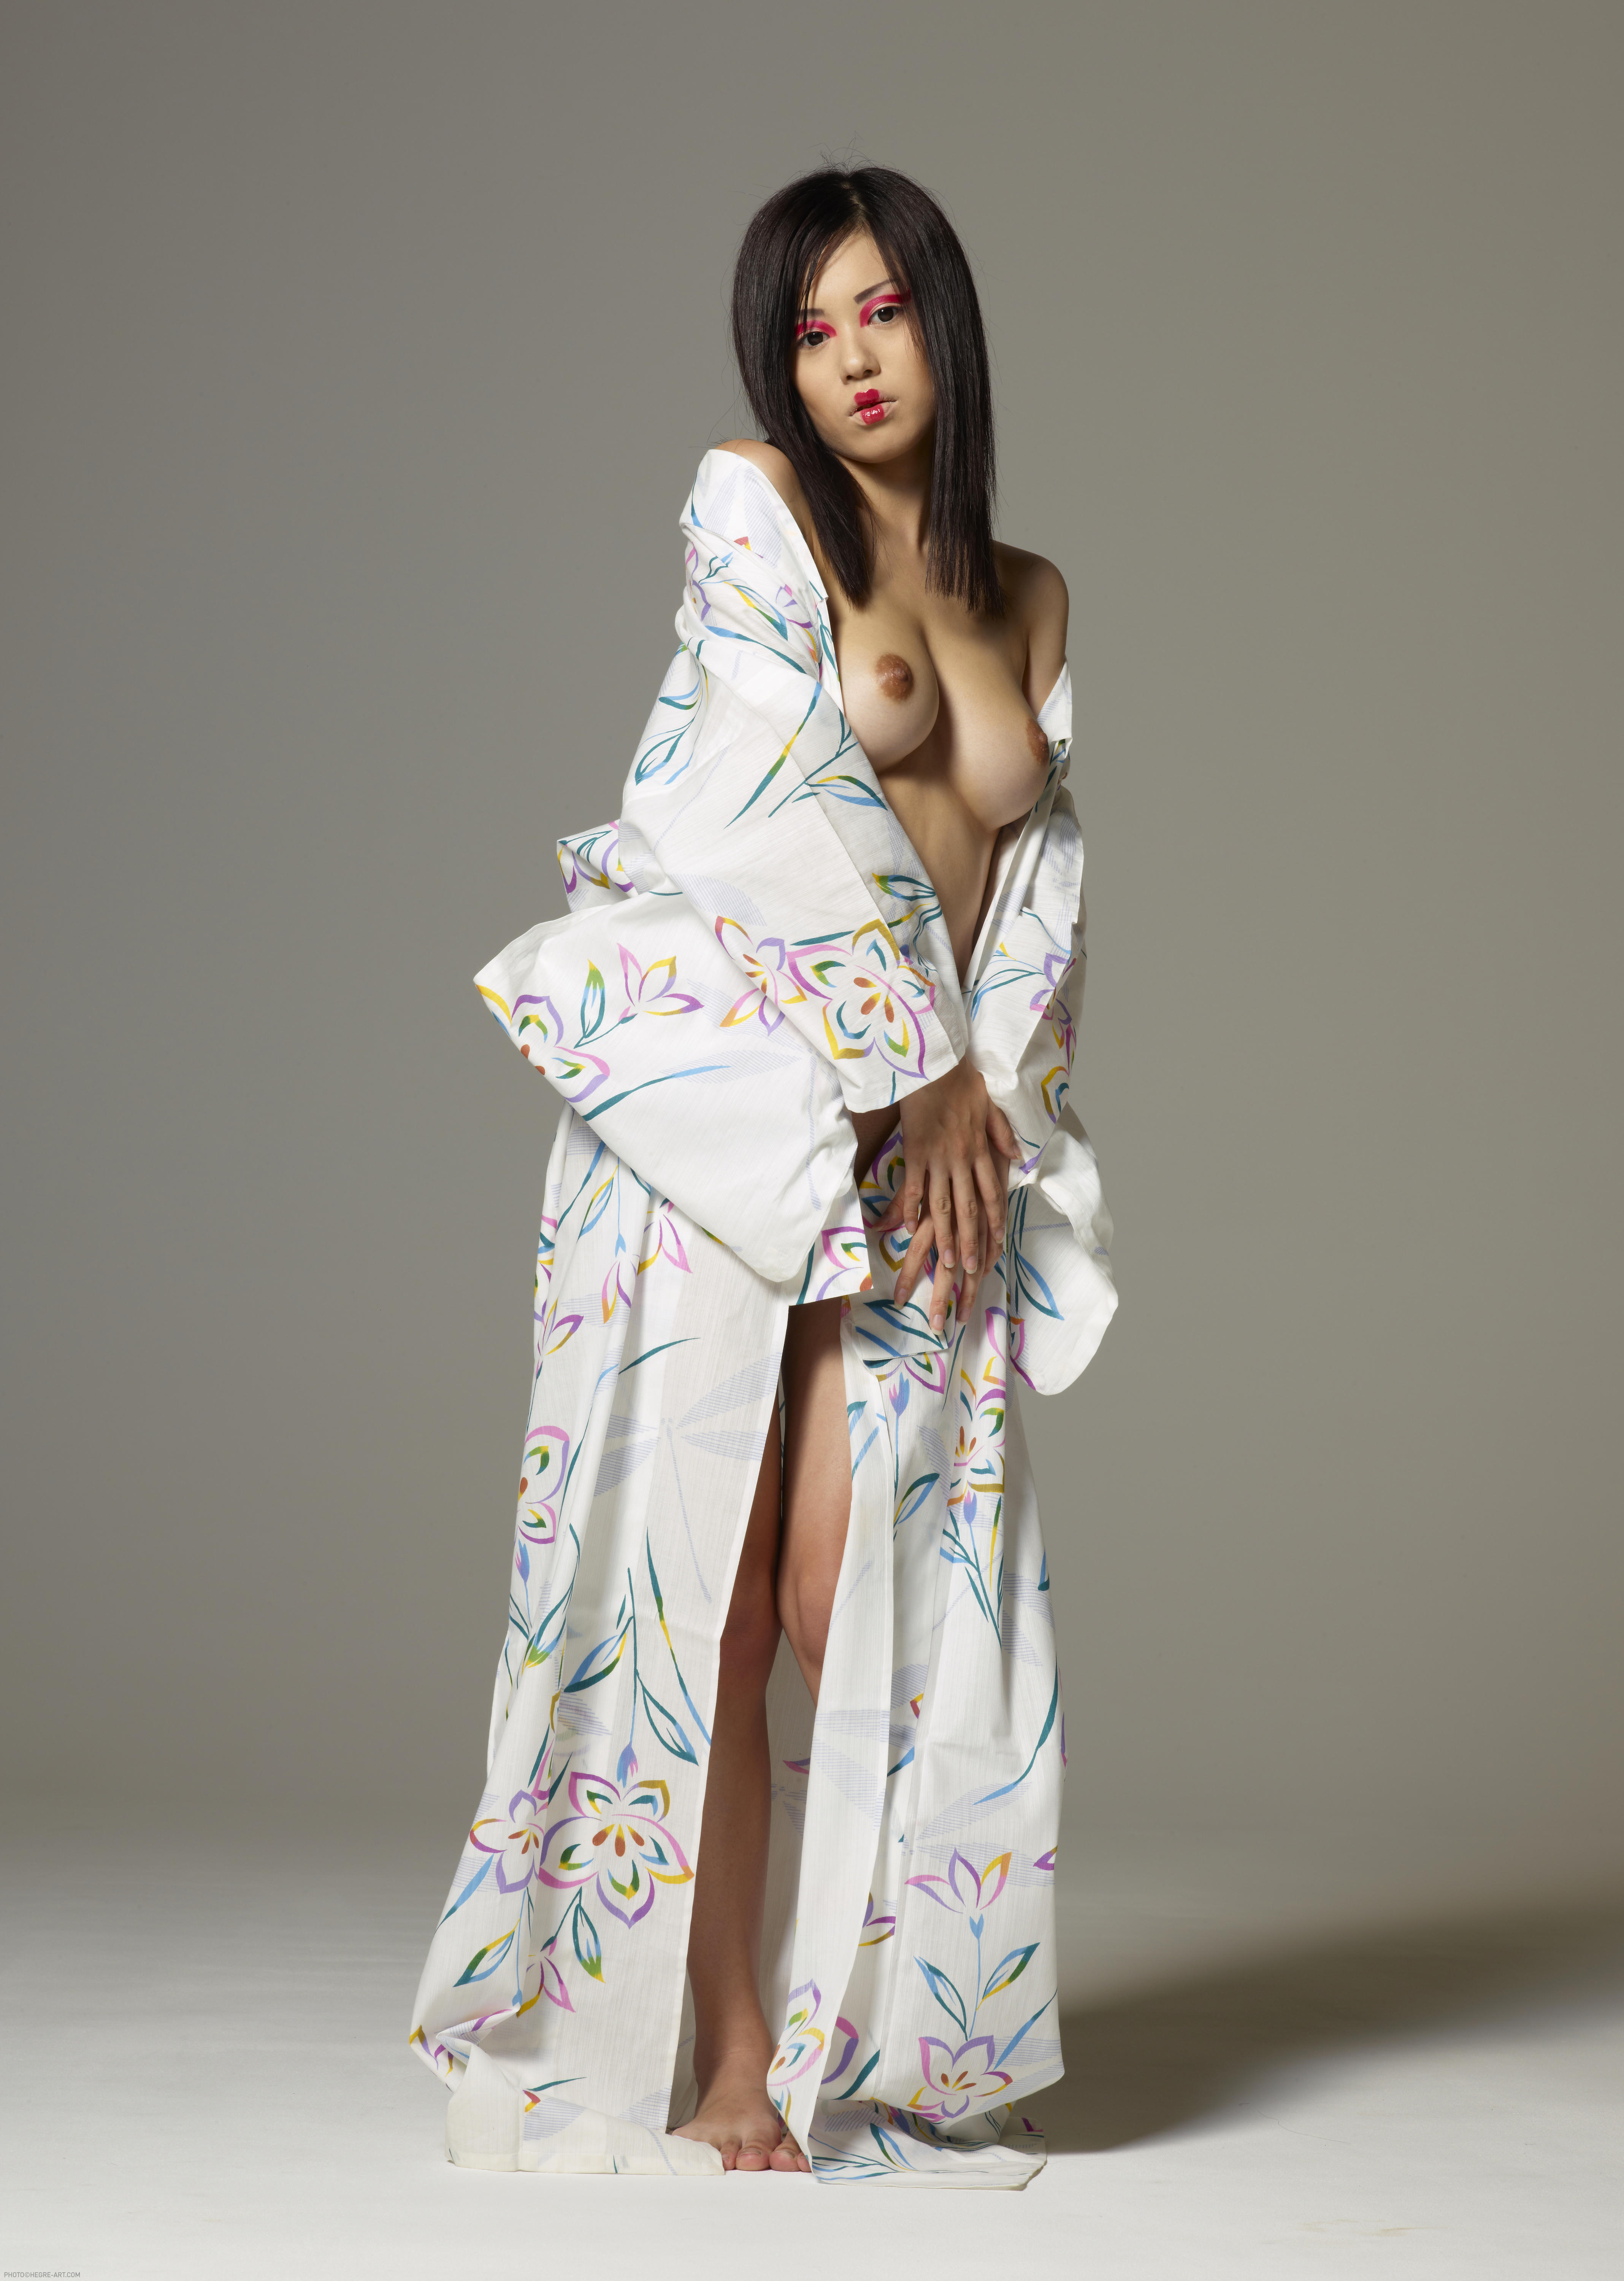 Konata Kimono 2011 04 13 011 xxxl